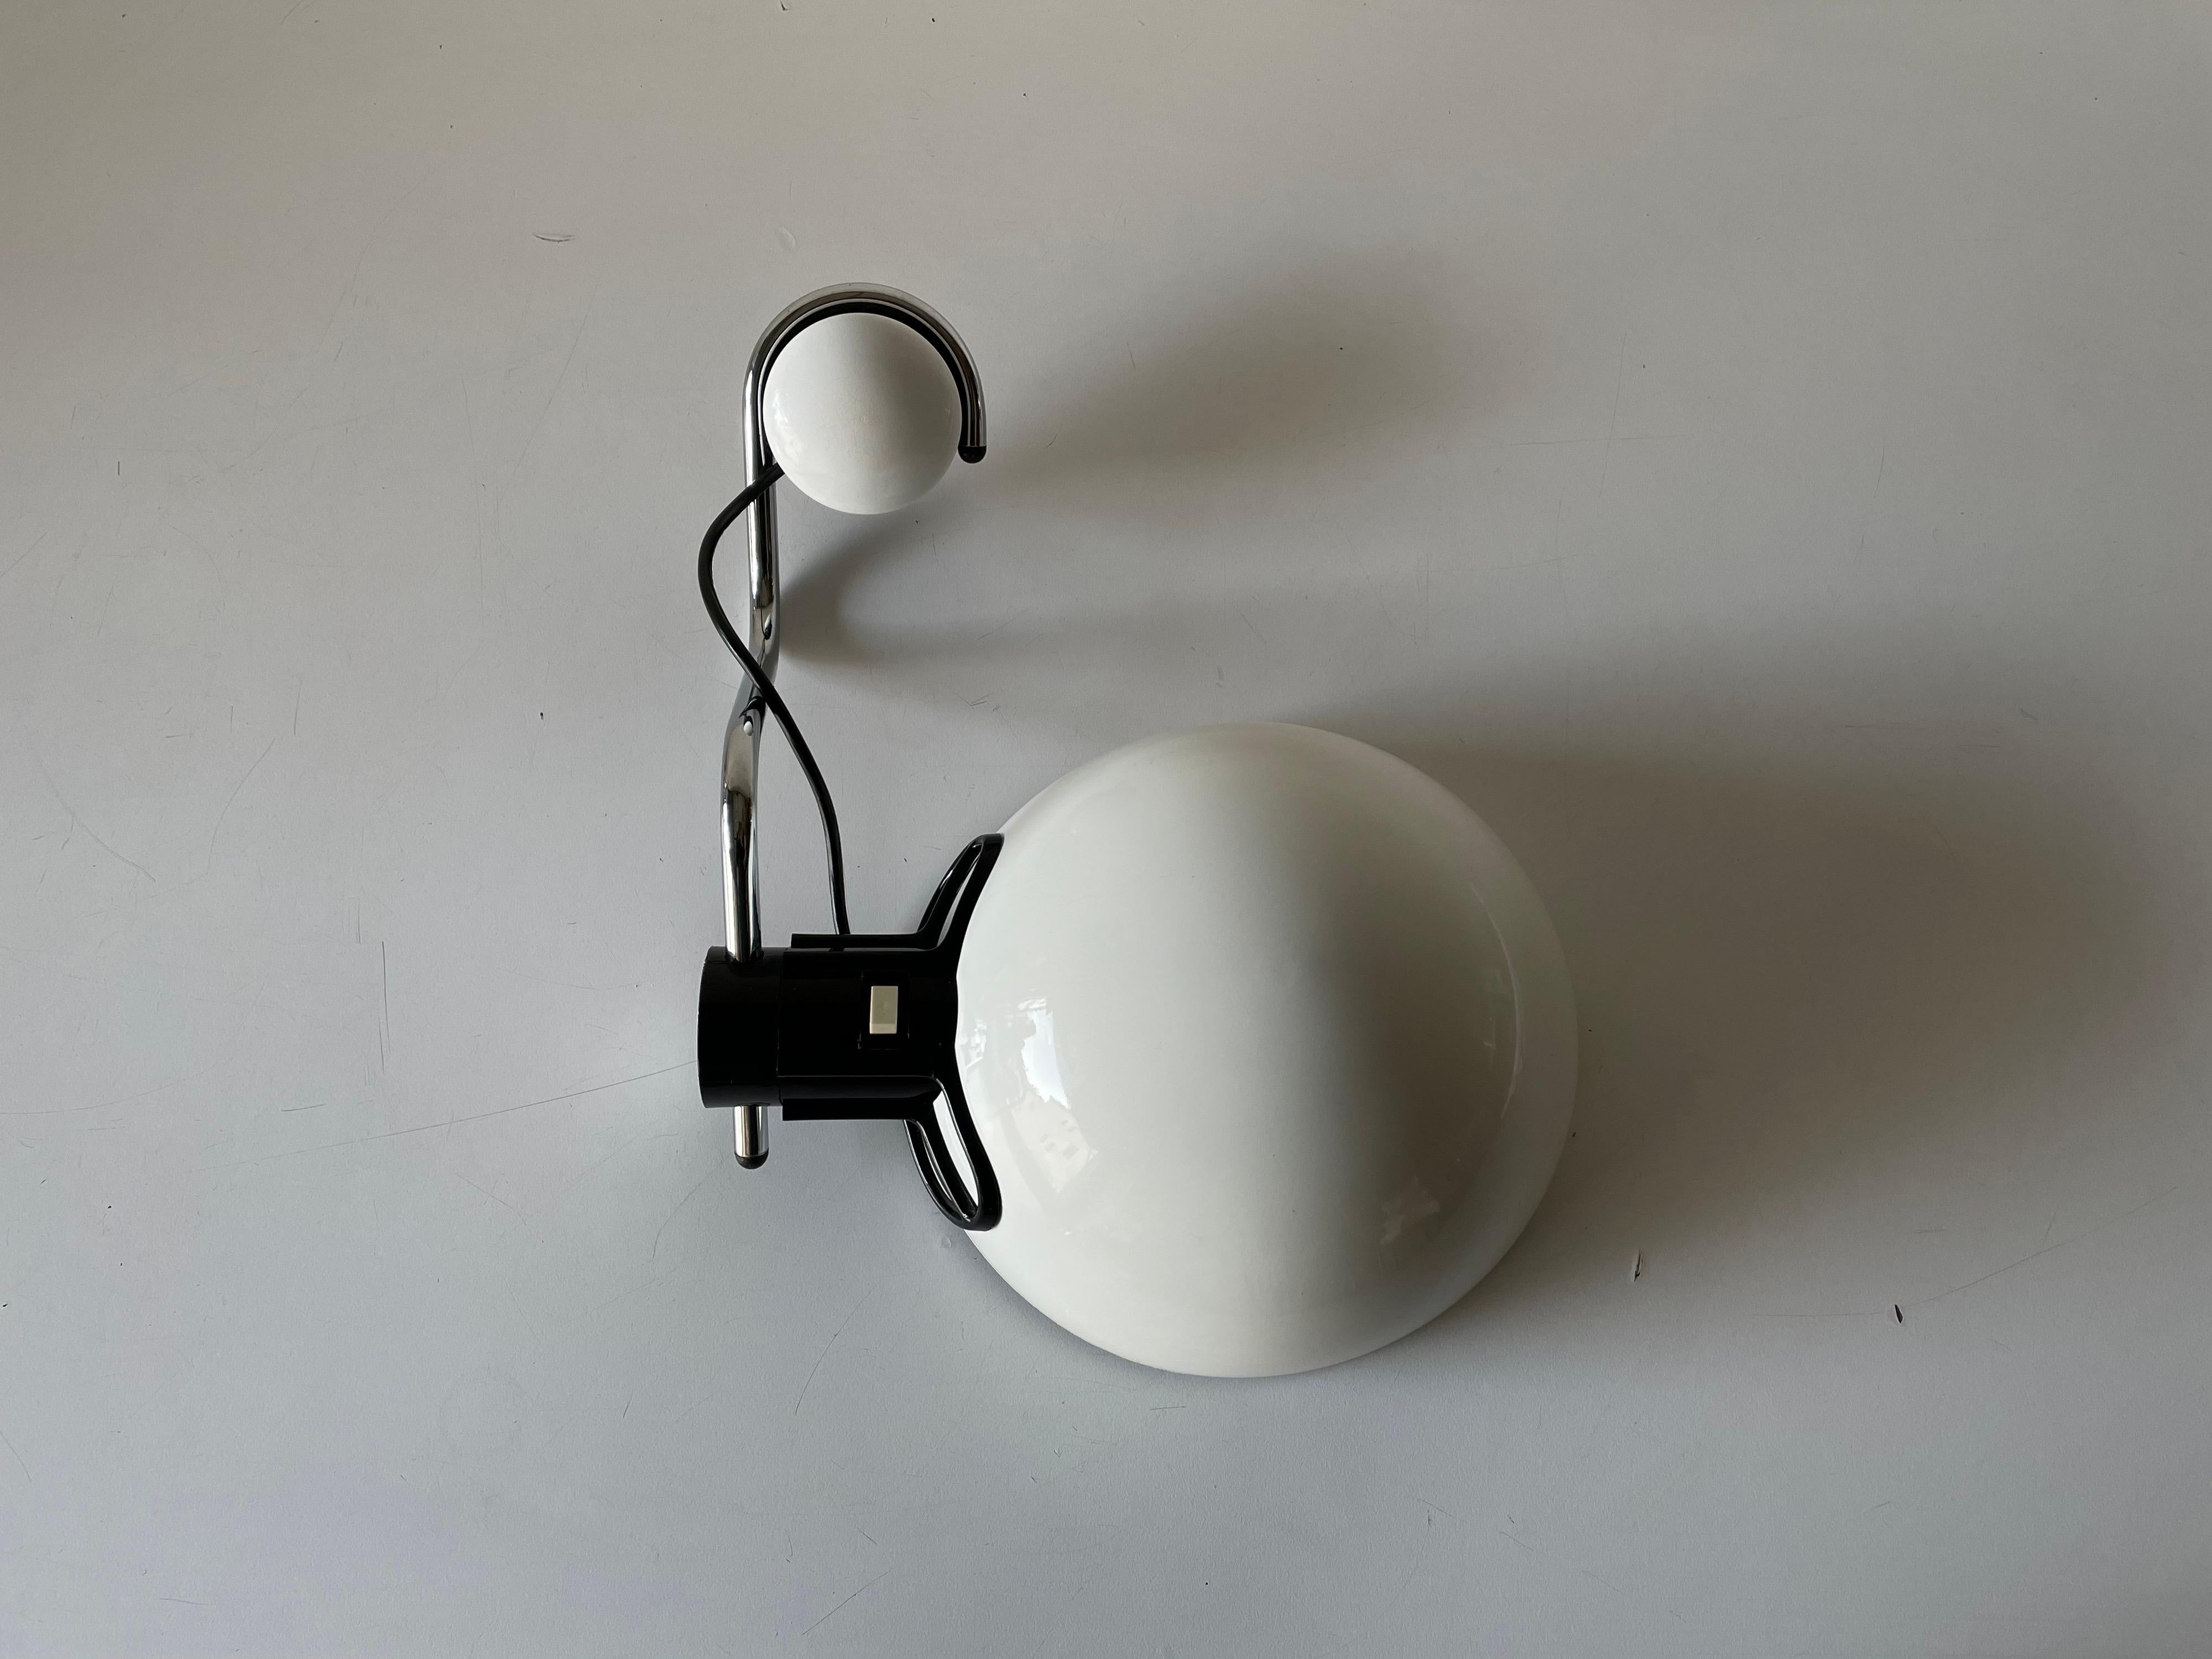 Wandleuchte aus weißem Metall von iGuzzini für Harveiluce, 1970er Jahre, Italien

Sehr elegante und minimalistische Wandleuchten
Einstellbarer Kopf

Die Lampen sind in sehr gutem Zustand.
Ein- und Ausschaltknopf auf der Oberseite des